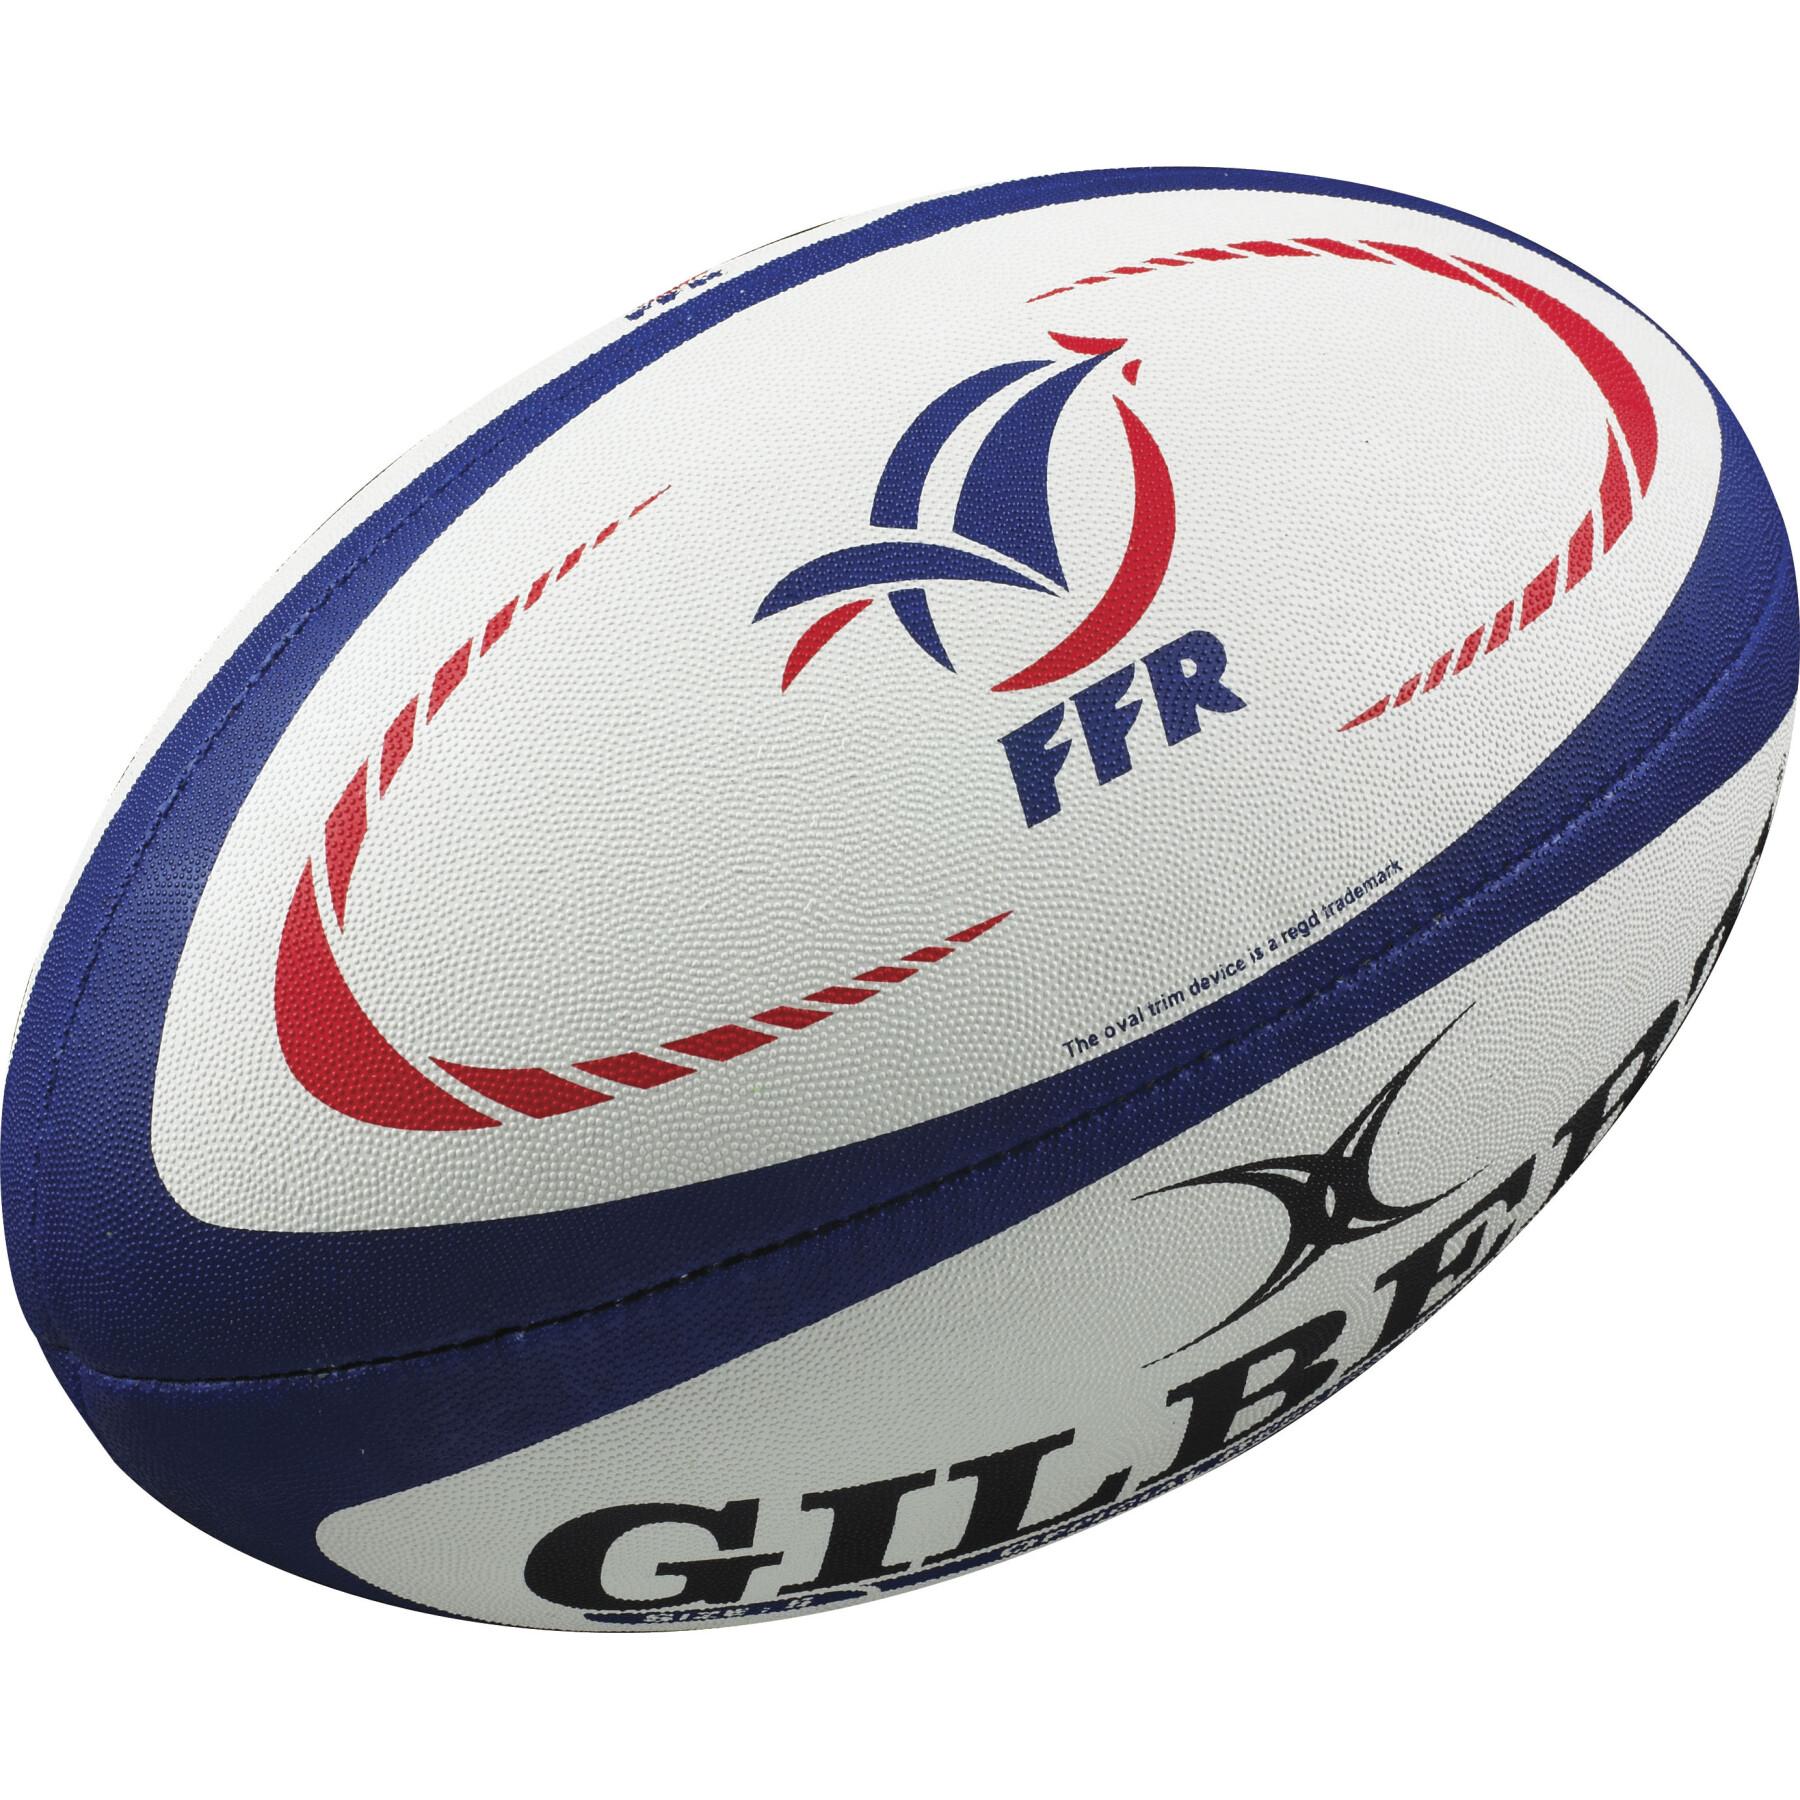 Set France Rugby Balls